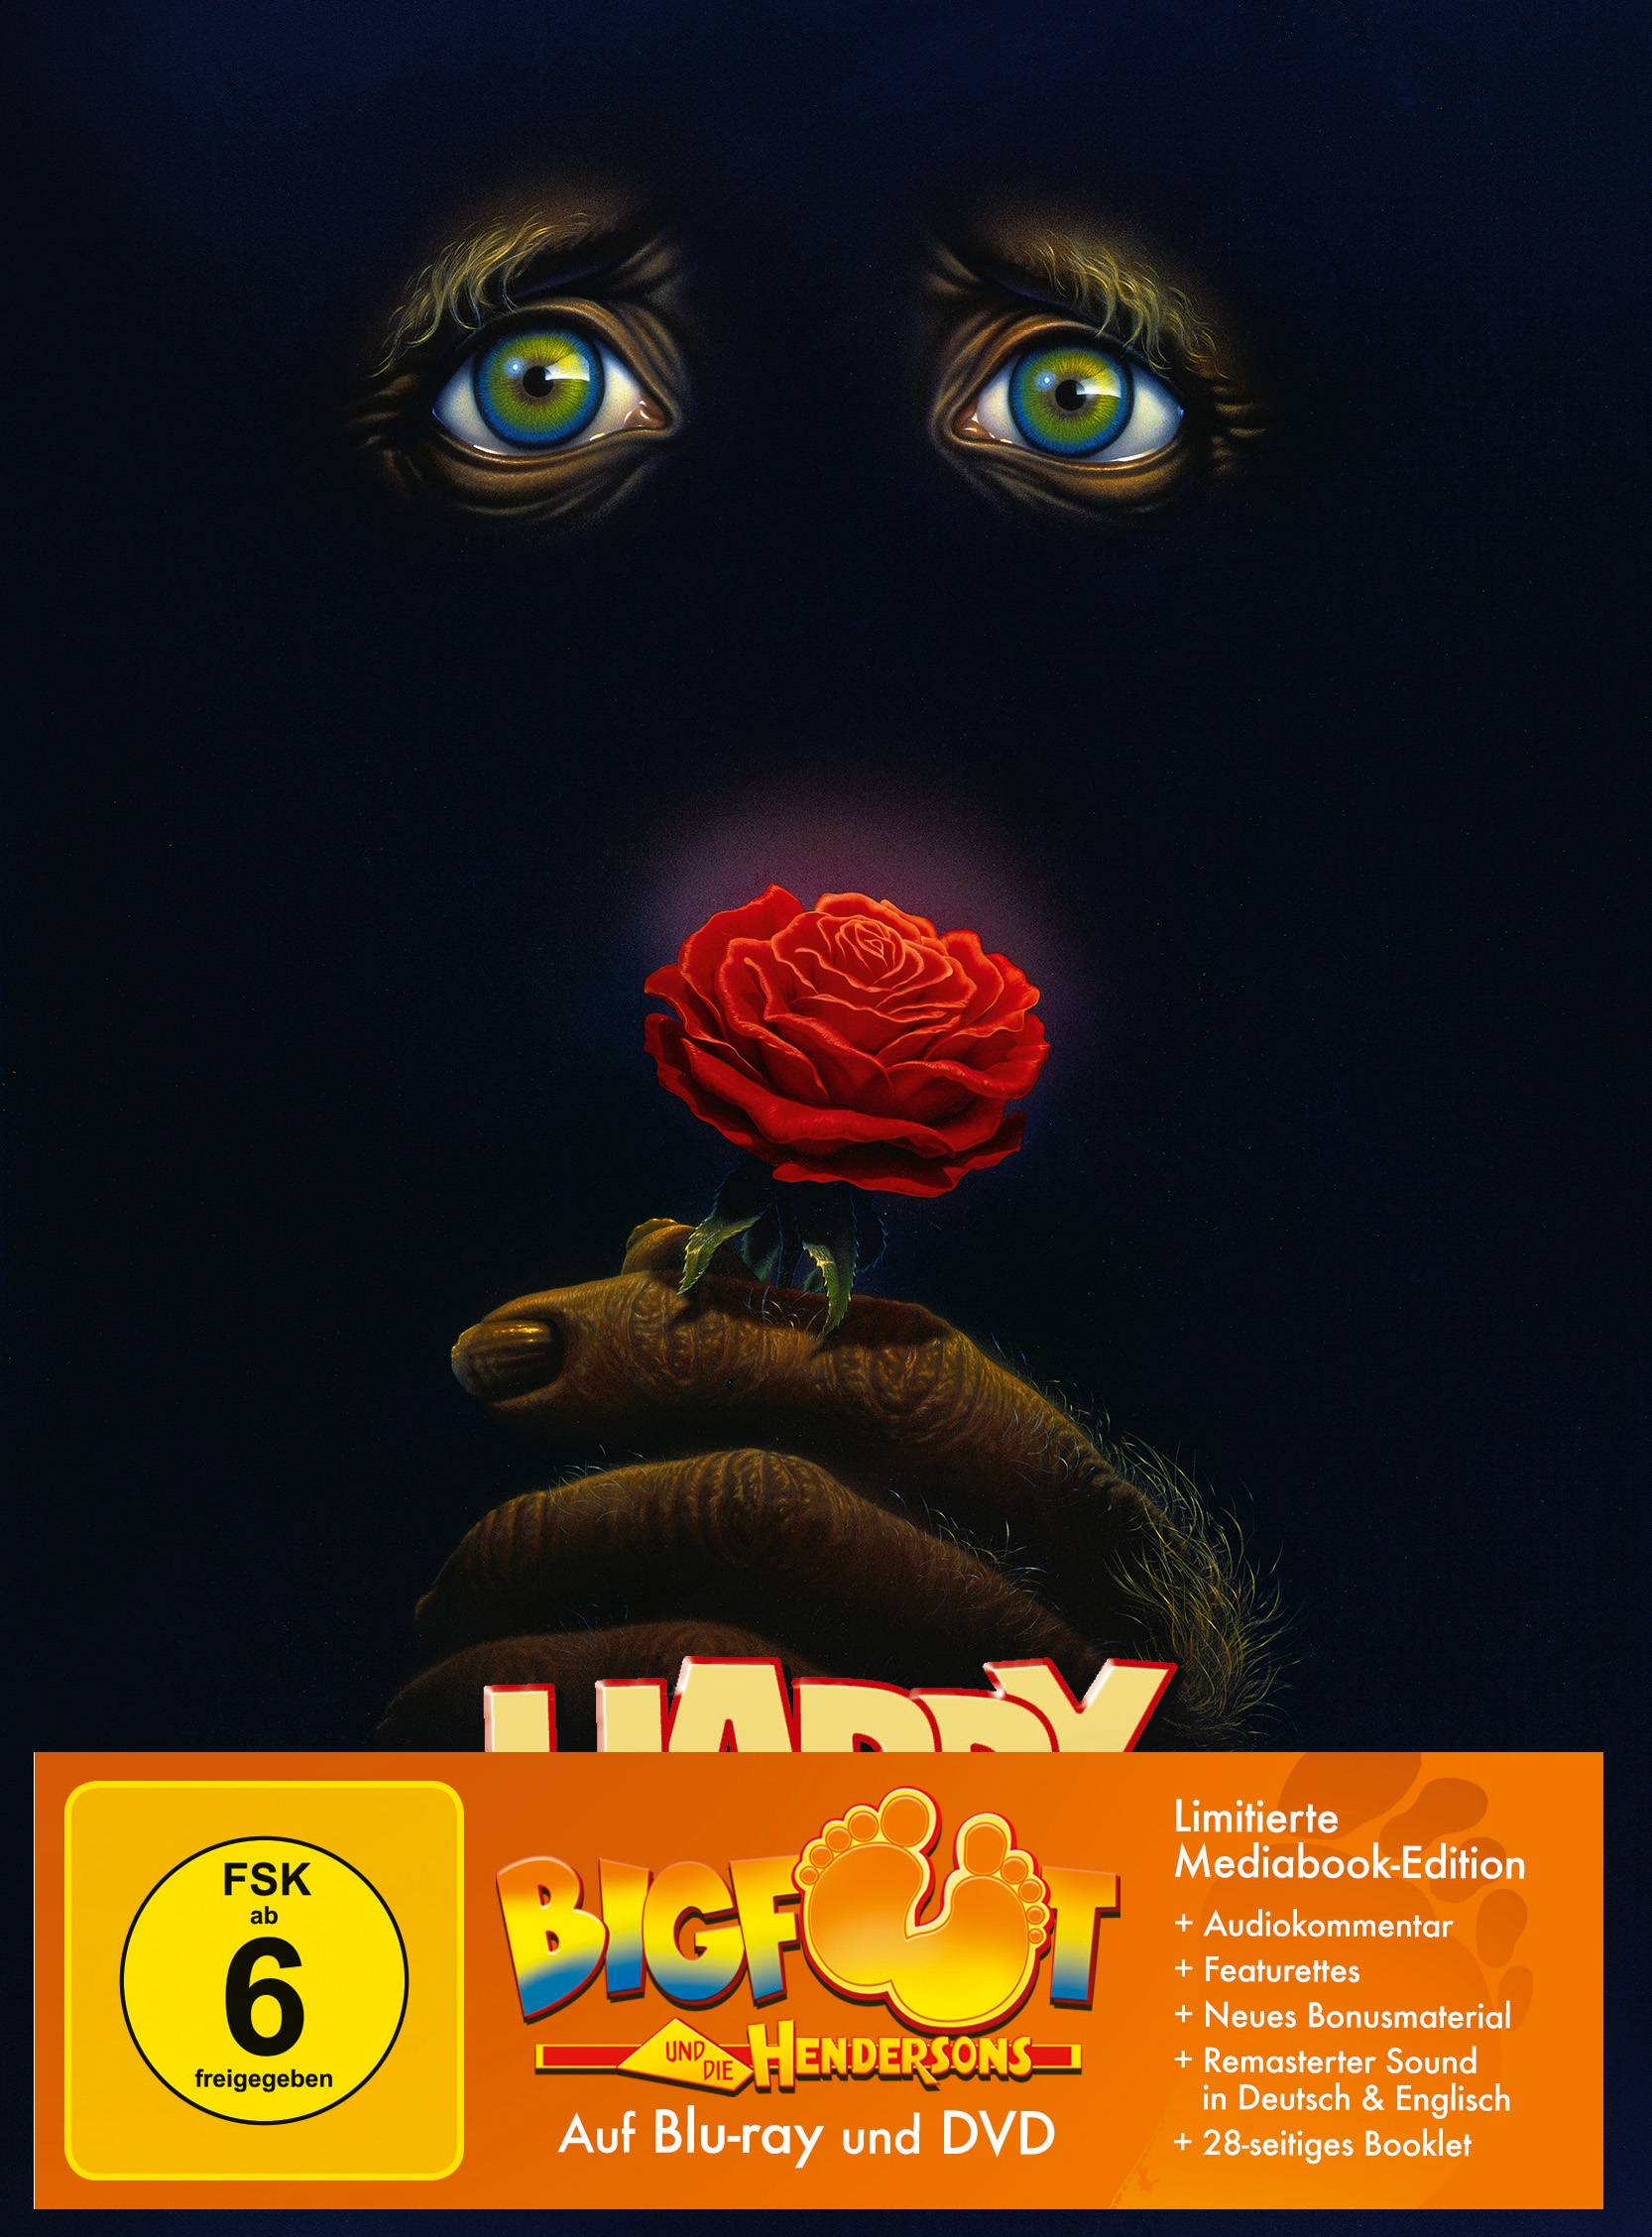 Bigfoot und die Hendersons | Mediabook (Blu-ray + DVD) Cover E - limitiert auf 222 Stück